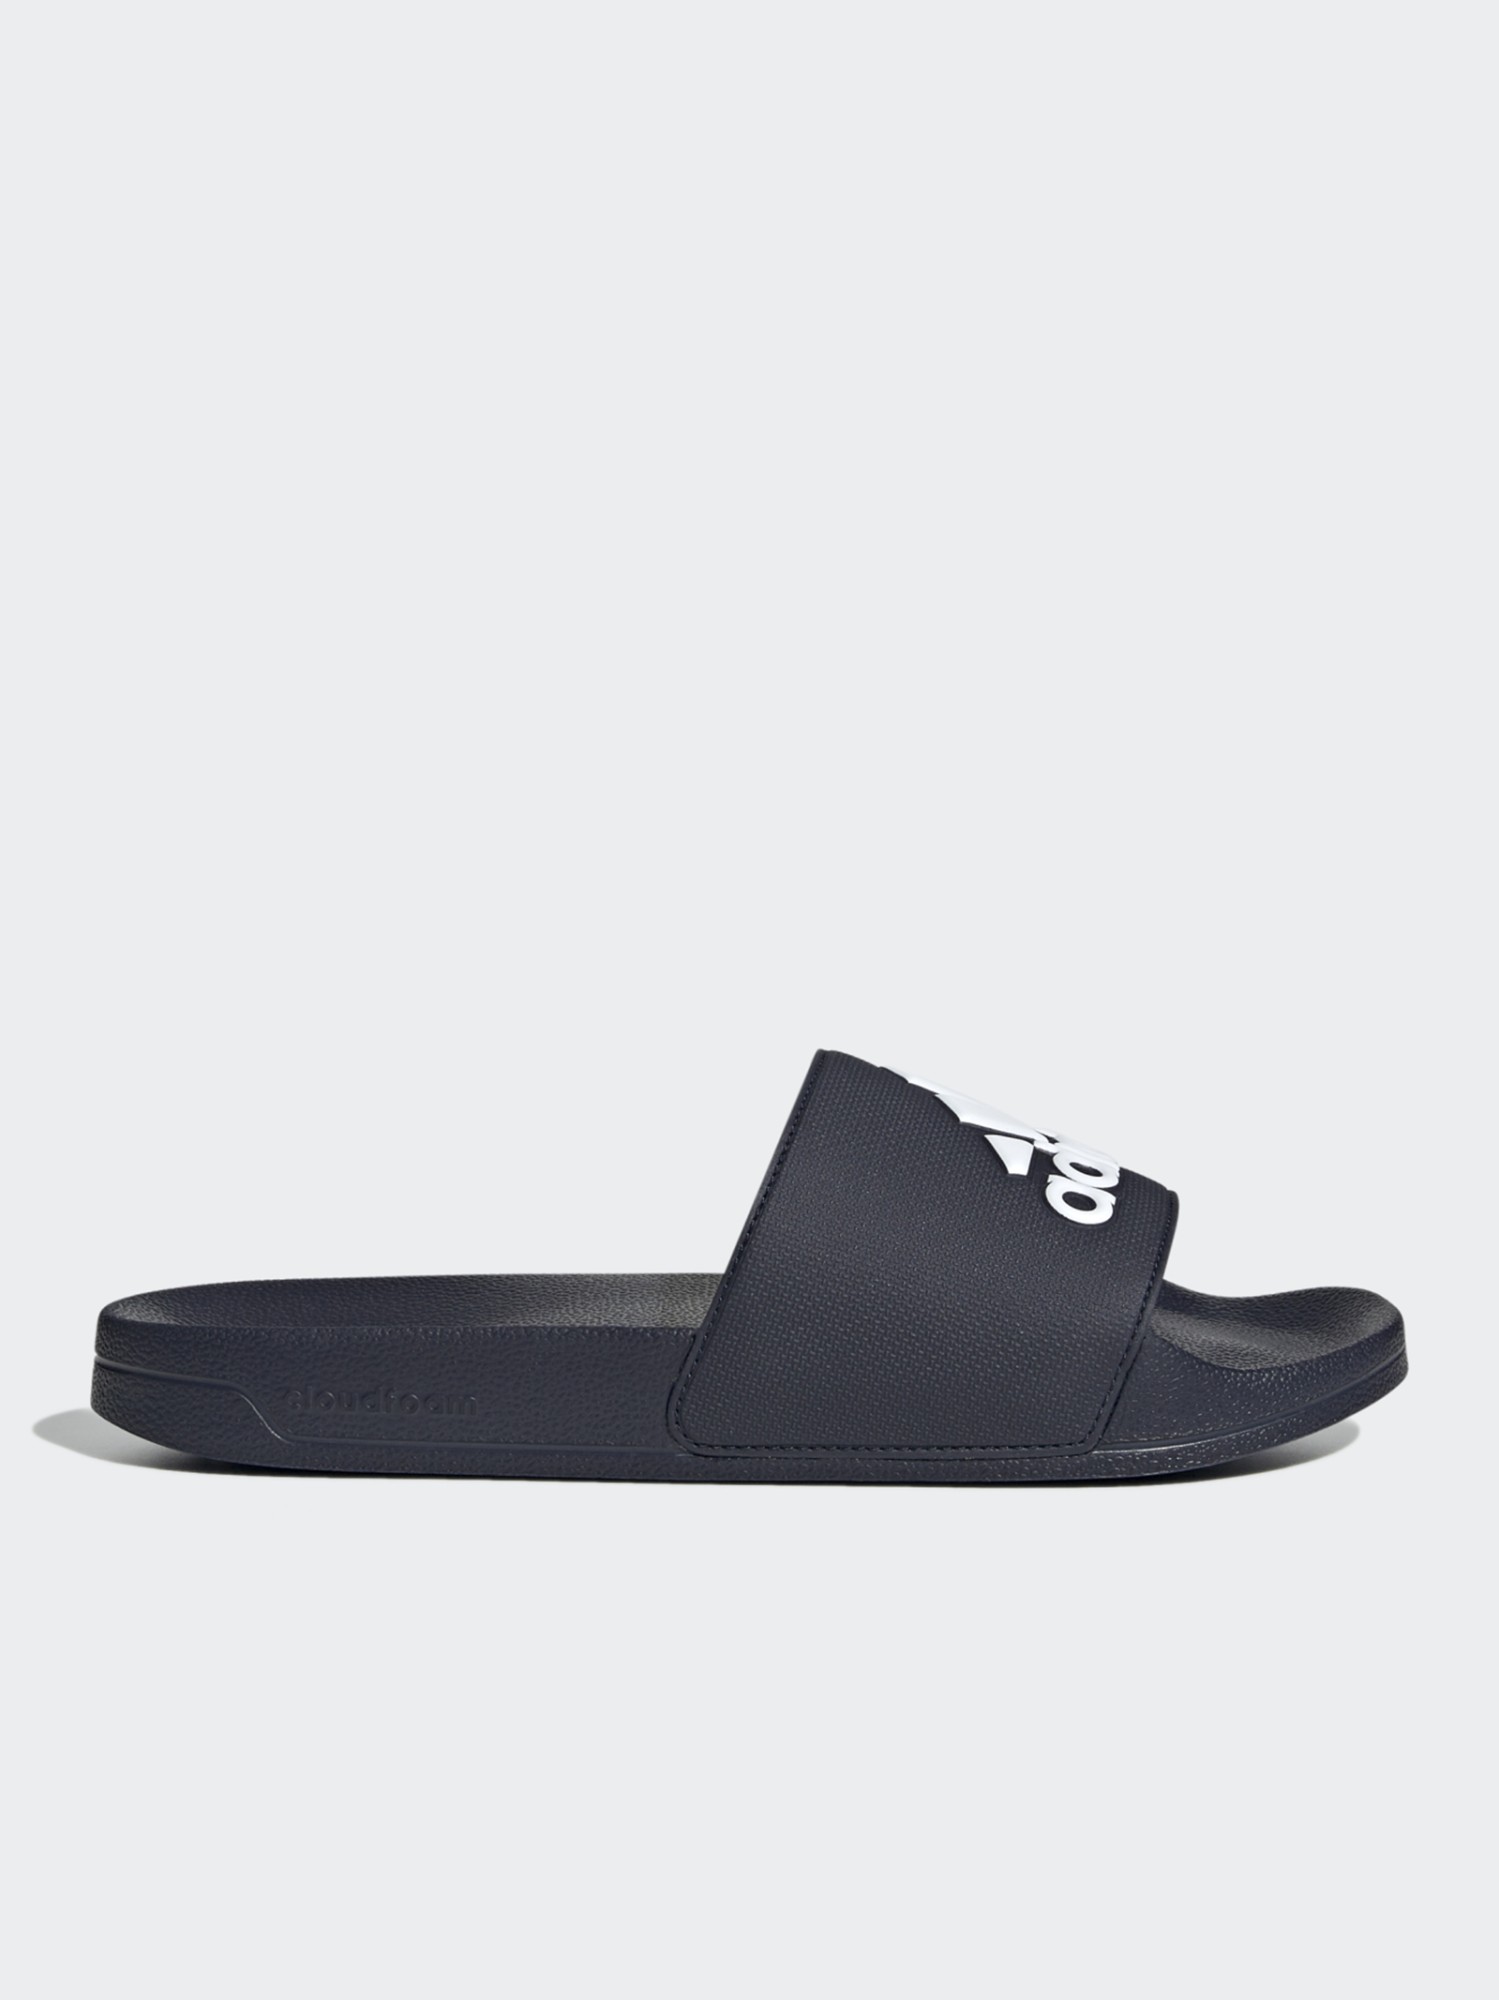 Пляжная обувь мужская Adidas ADILETTE SHOWER черная GZ3774 изображение 2